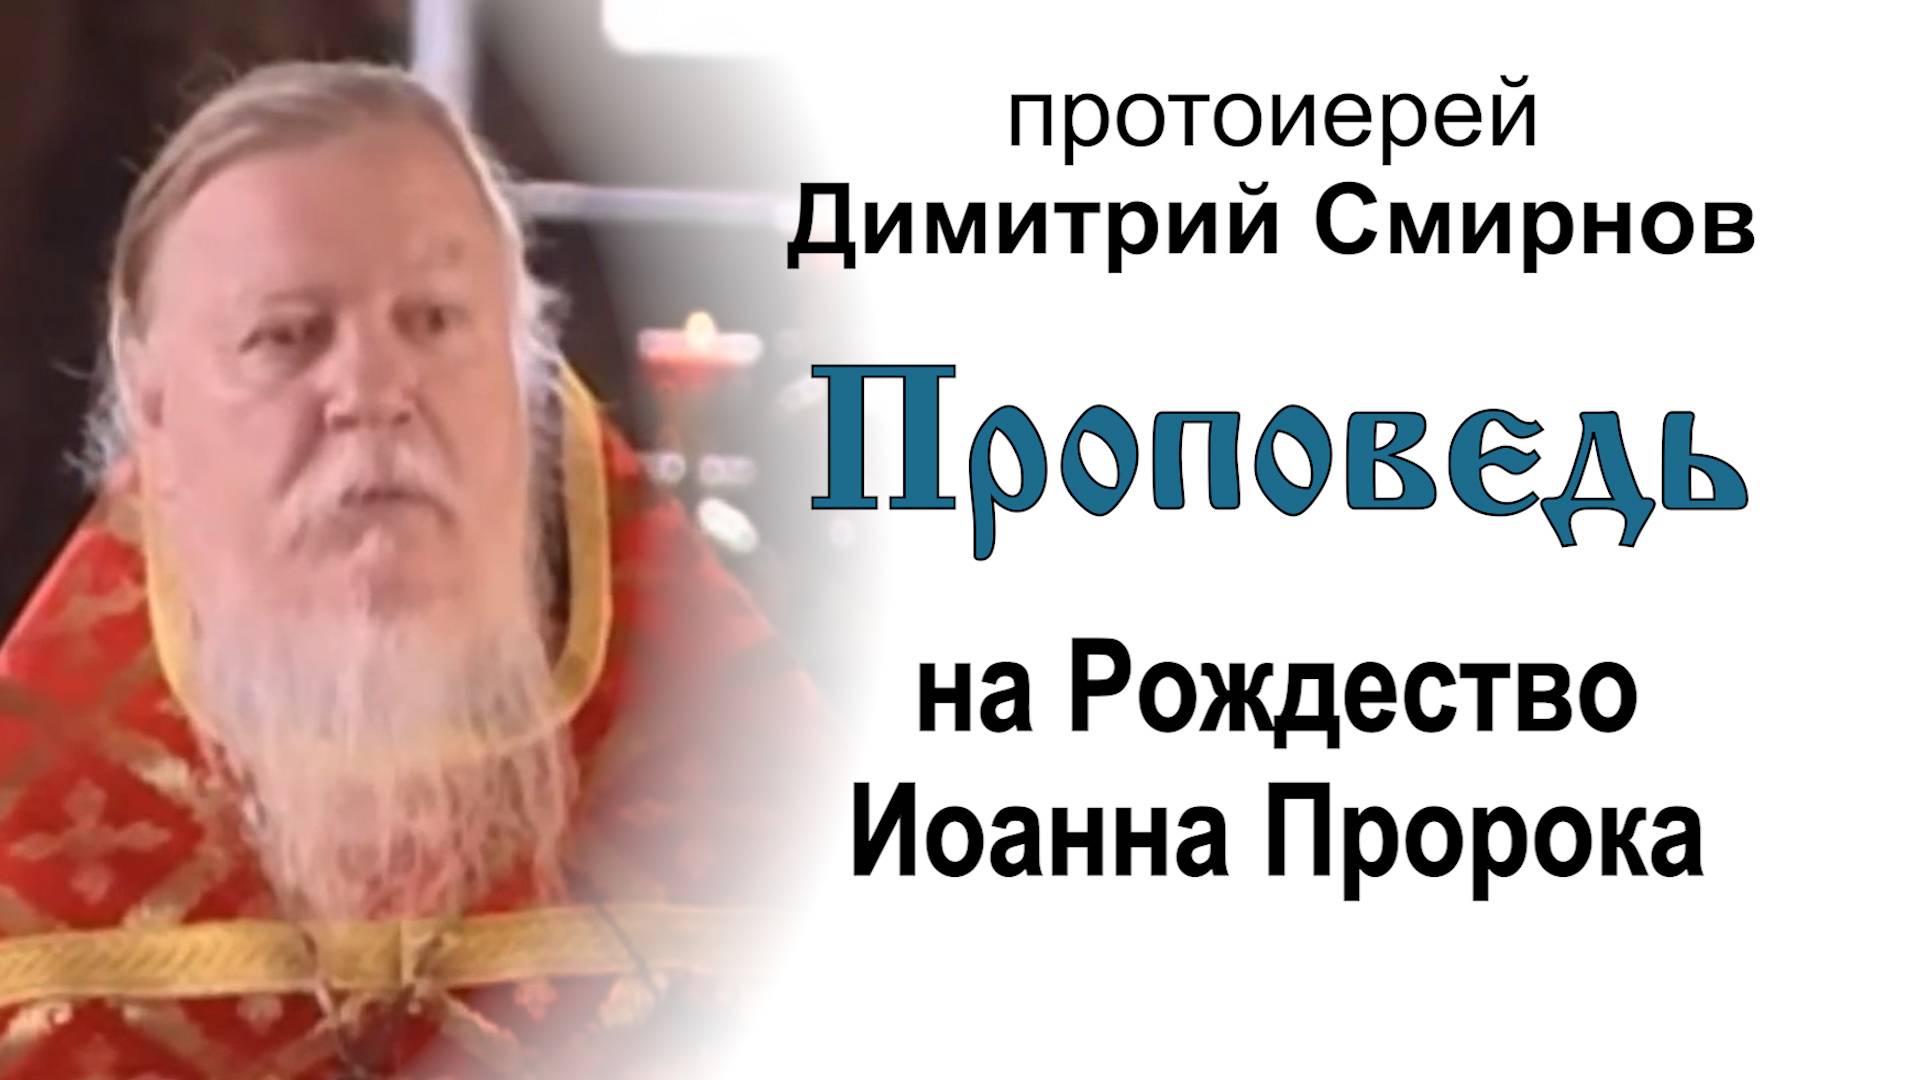 Проповедь на Рождество Иоанна Пророка (2005.07.07). Протоиерей Димитрий Смирнов